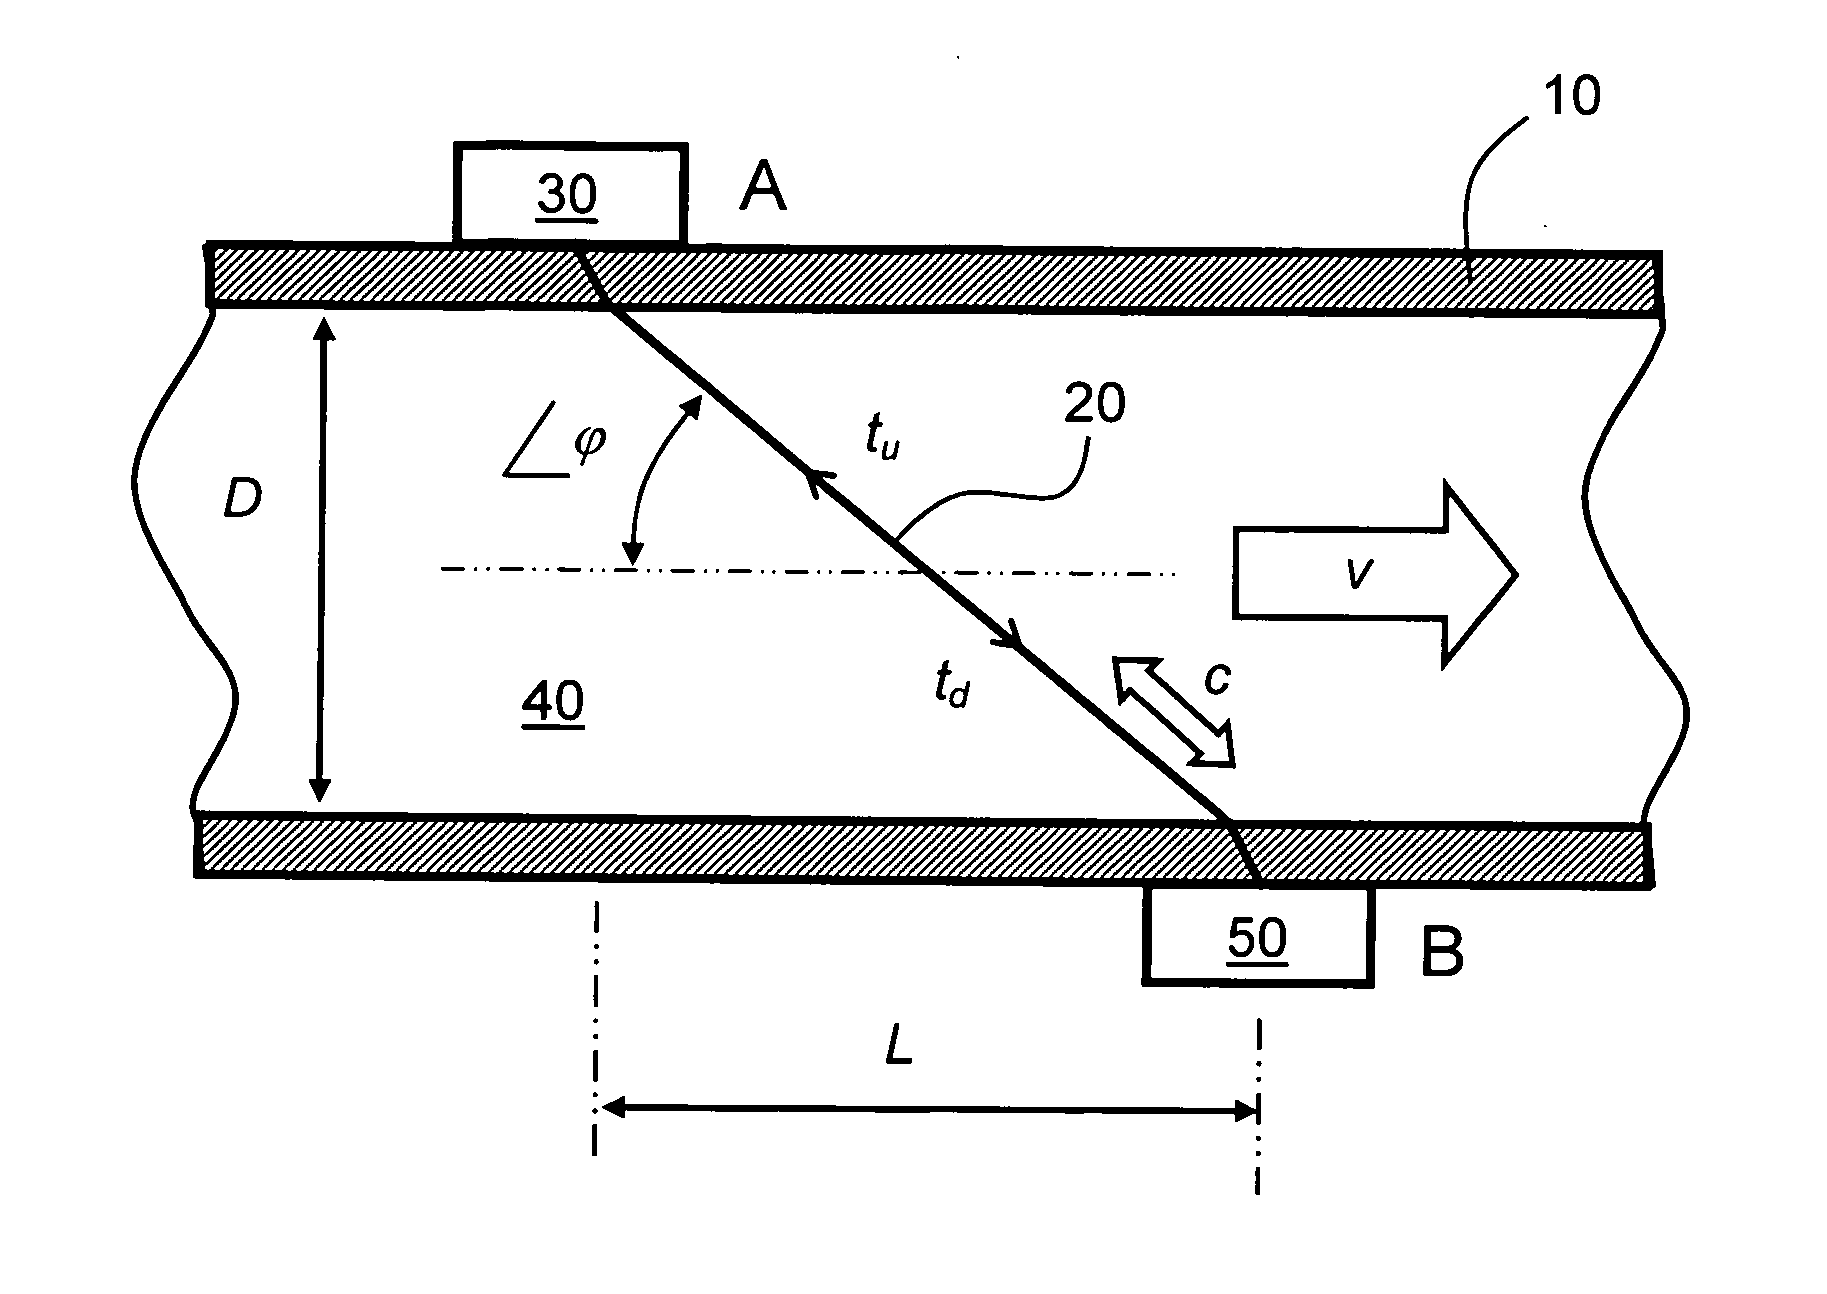 Flow measuring apparatus